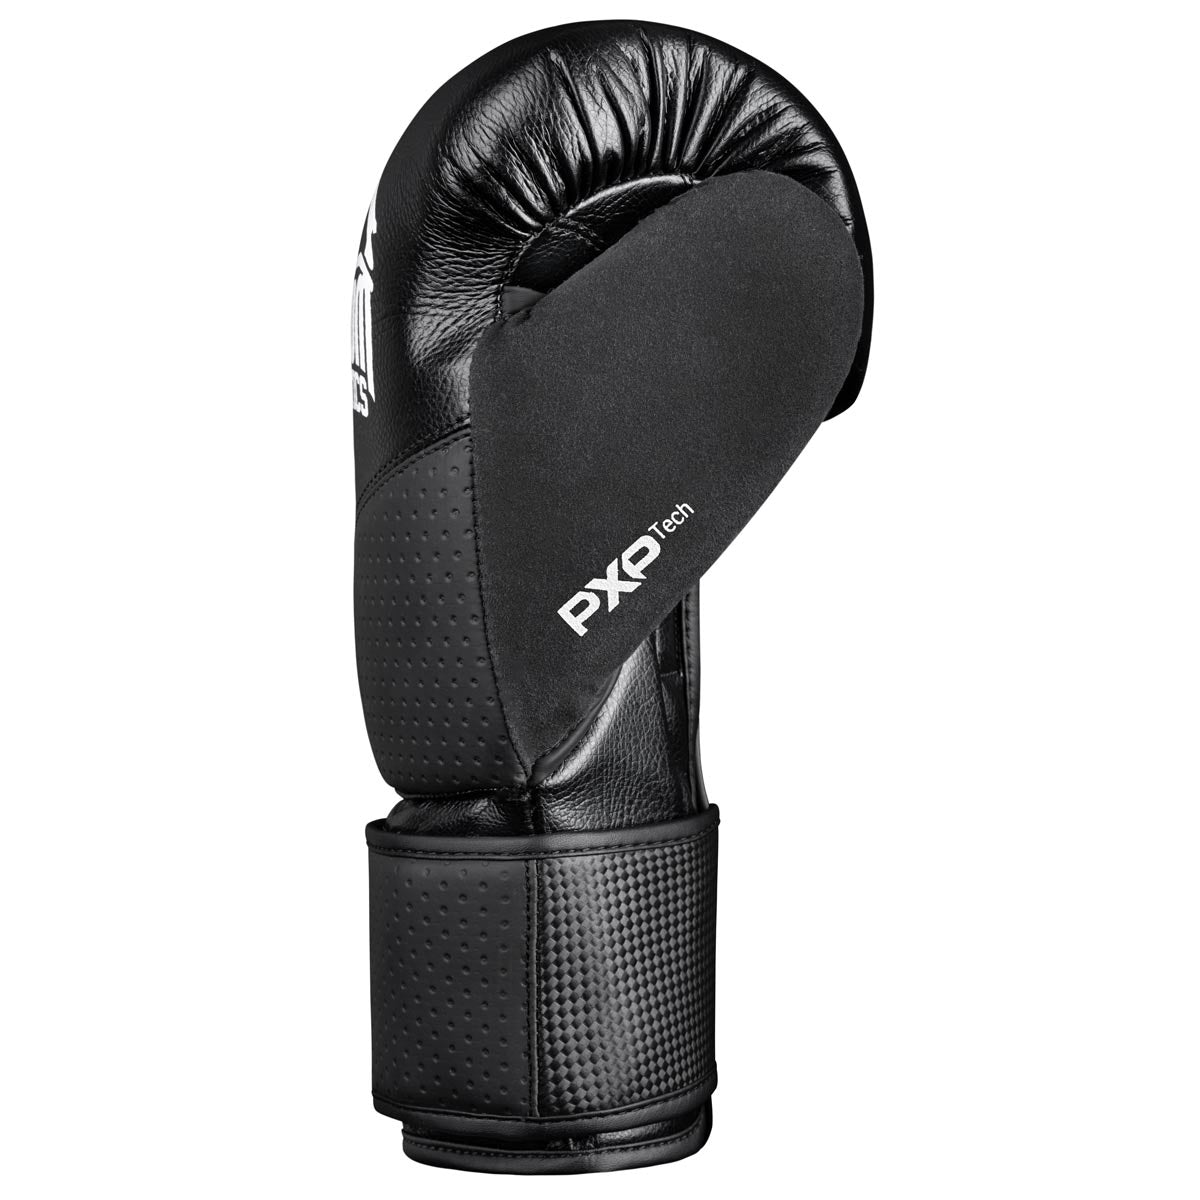 Die Phantom RIOT PRO Boxhandschuhe. Ideal für dein Kampfsport Training und Wettkämpfe. Perfekte Passform und überragende Qualität für Training und Sparring. Die vorgeformte Trefferfläche sorgt für ein angenehmes Tragegefühl.